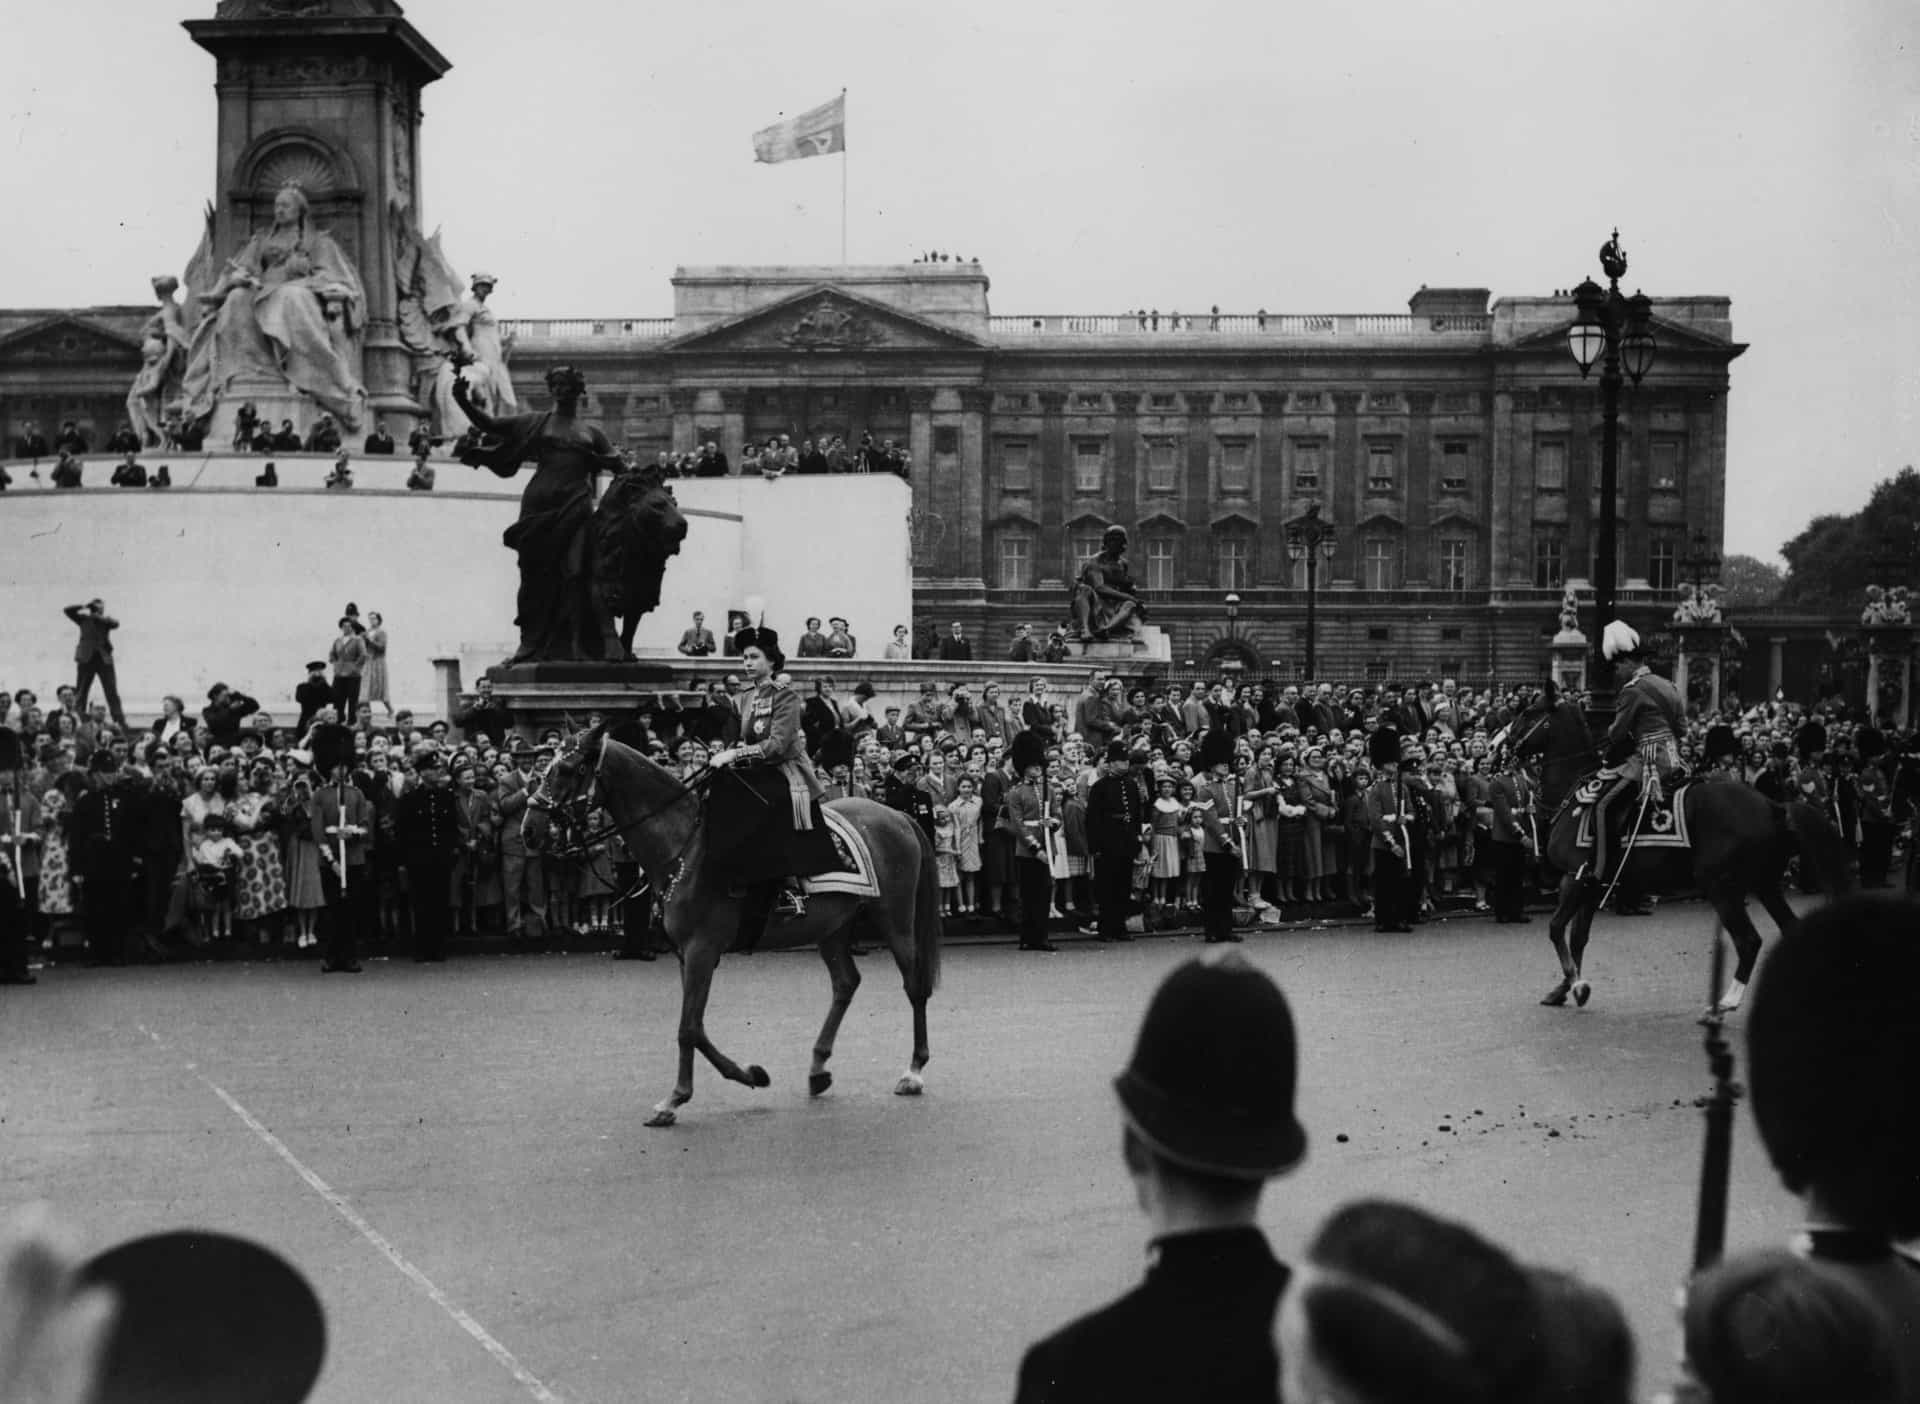 Königin Elisabeth II. reitet das Pferd Winston. Der Herzog von Edinburgh hinter ihr hat bei der Horse Guards Parade am 11. Juni 1953 Probleme mit seinem Pferd Yokefleet.